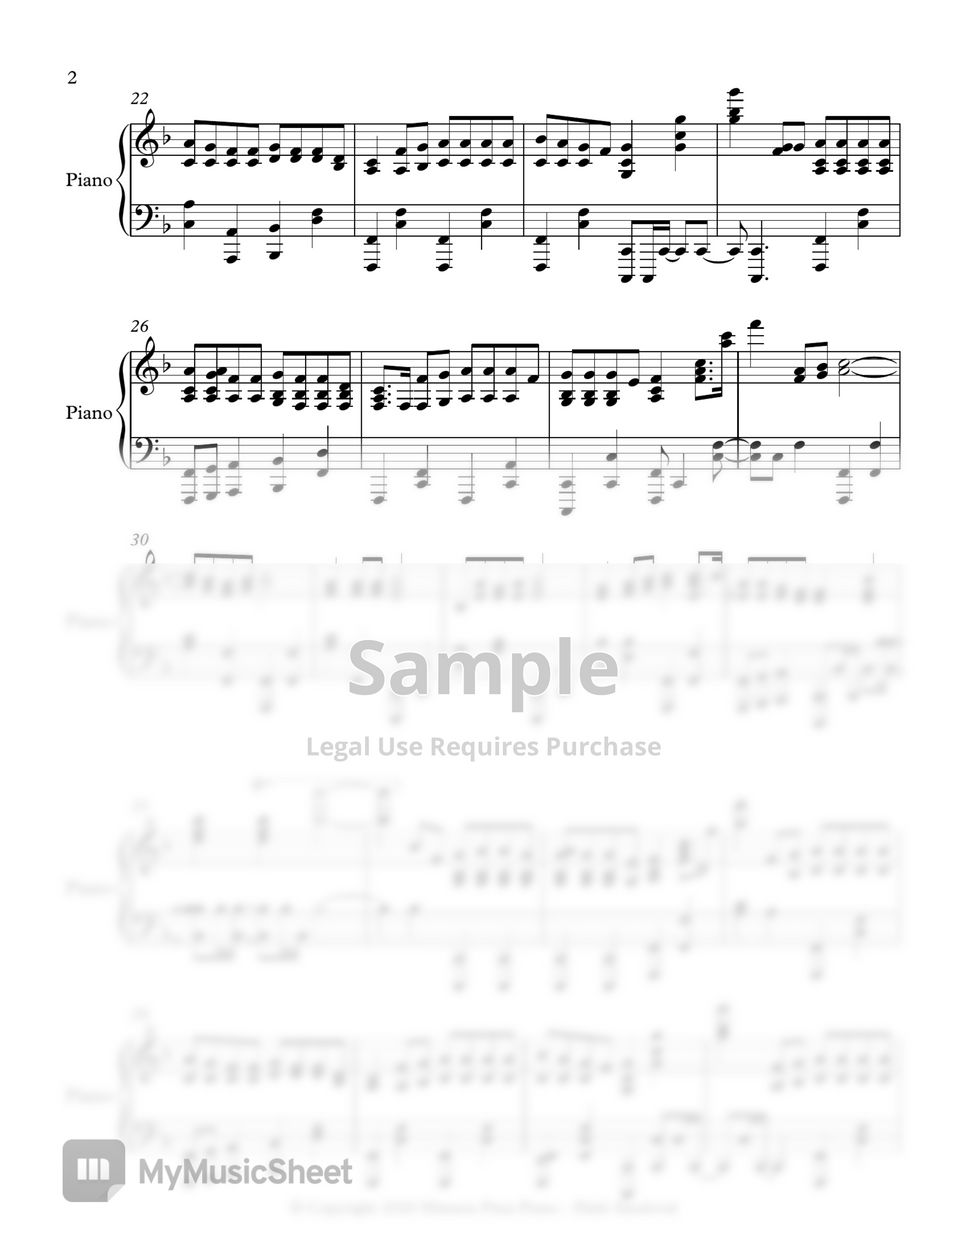 Himnario Adventista - Cuando suene la trompeta - Avanzada (Himno 169) by Himnos Pista Piano